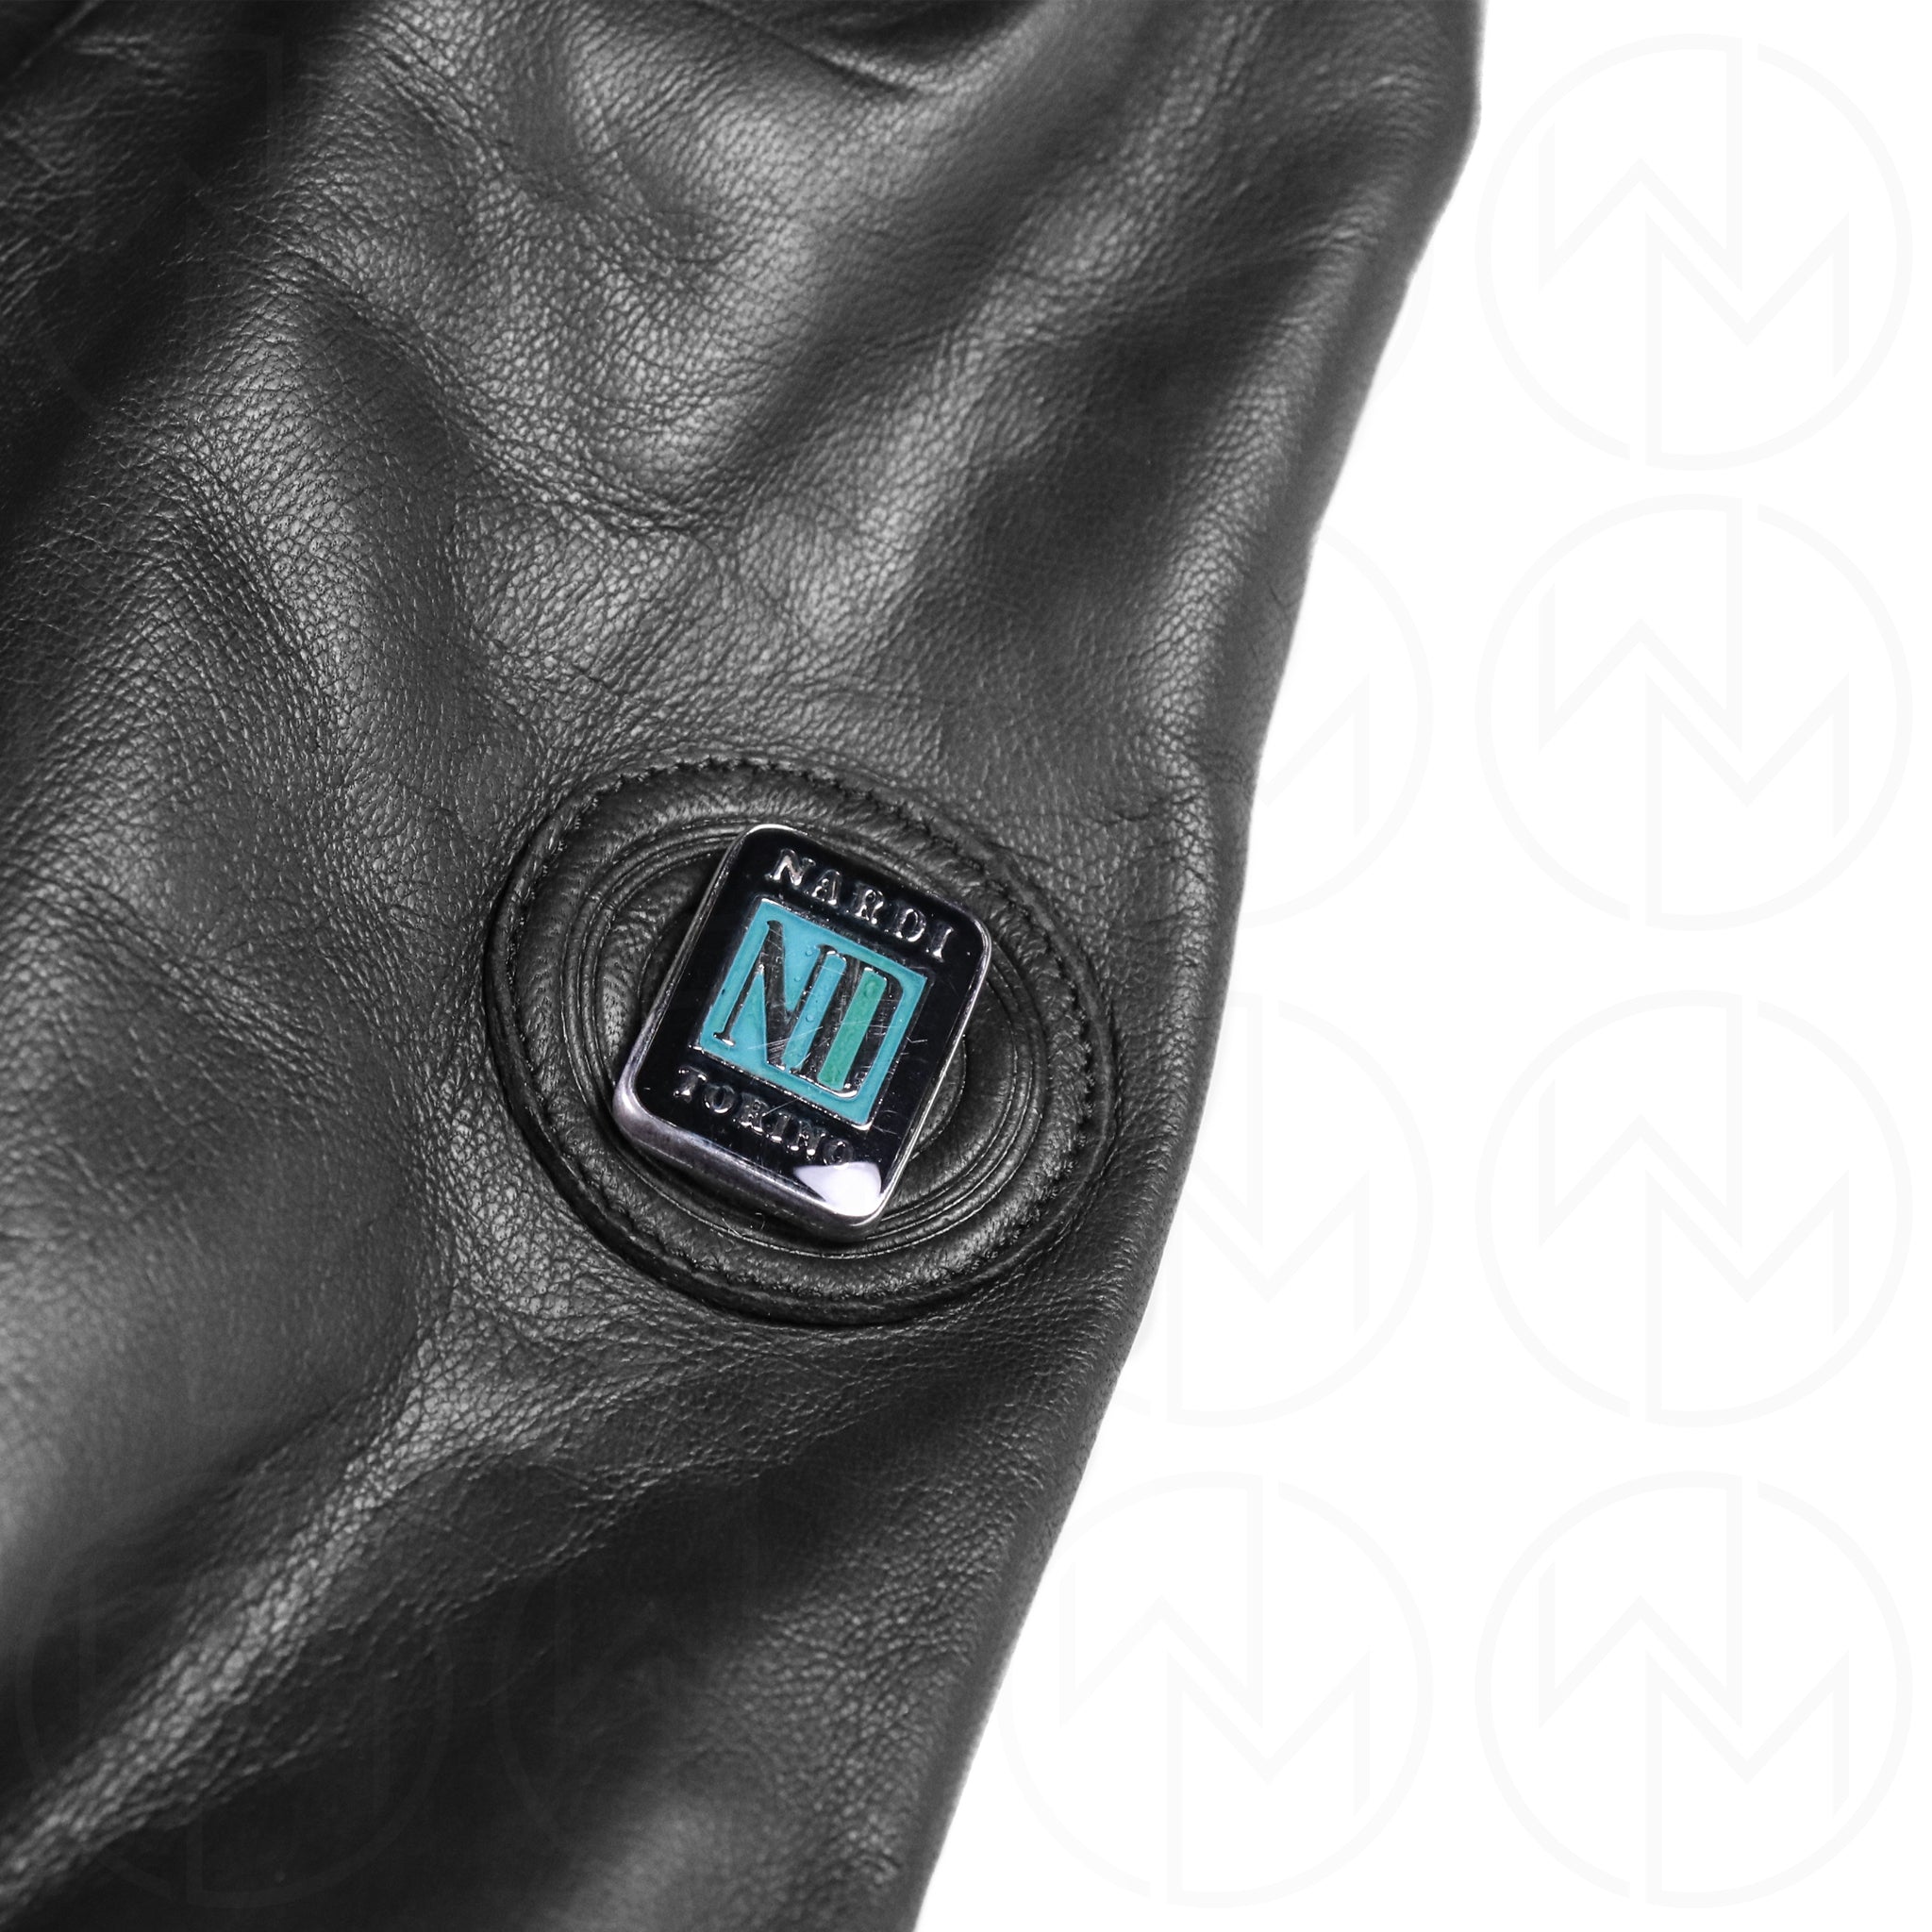 Nardi Leather Jacket - Size 56